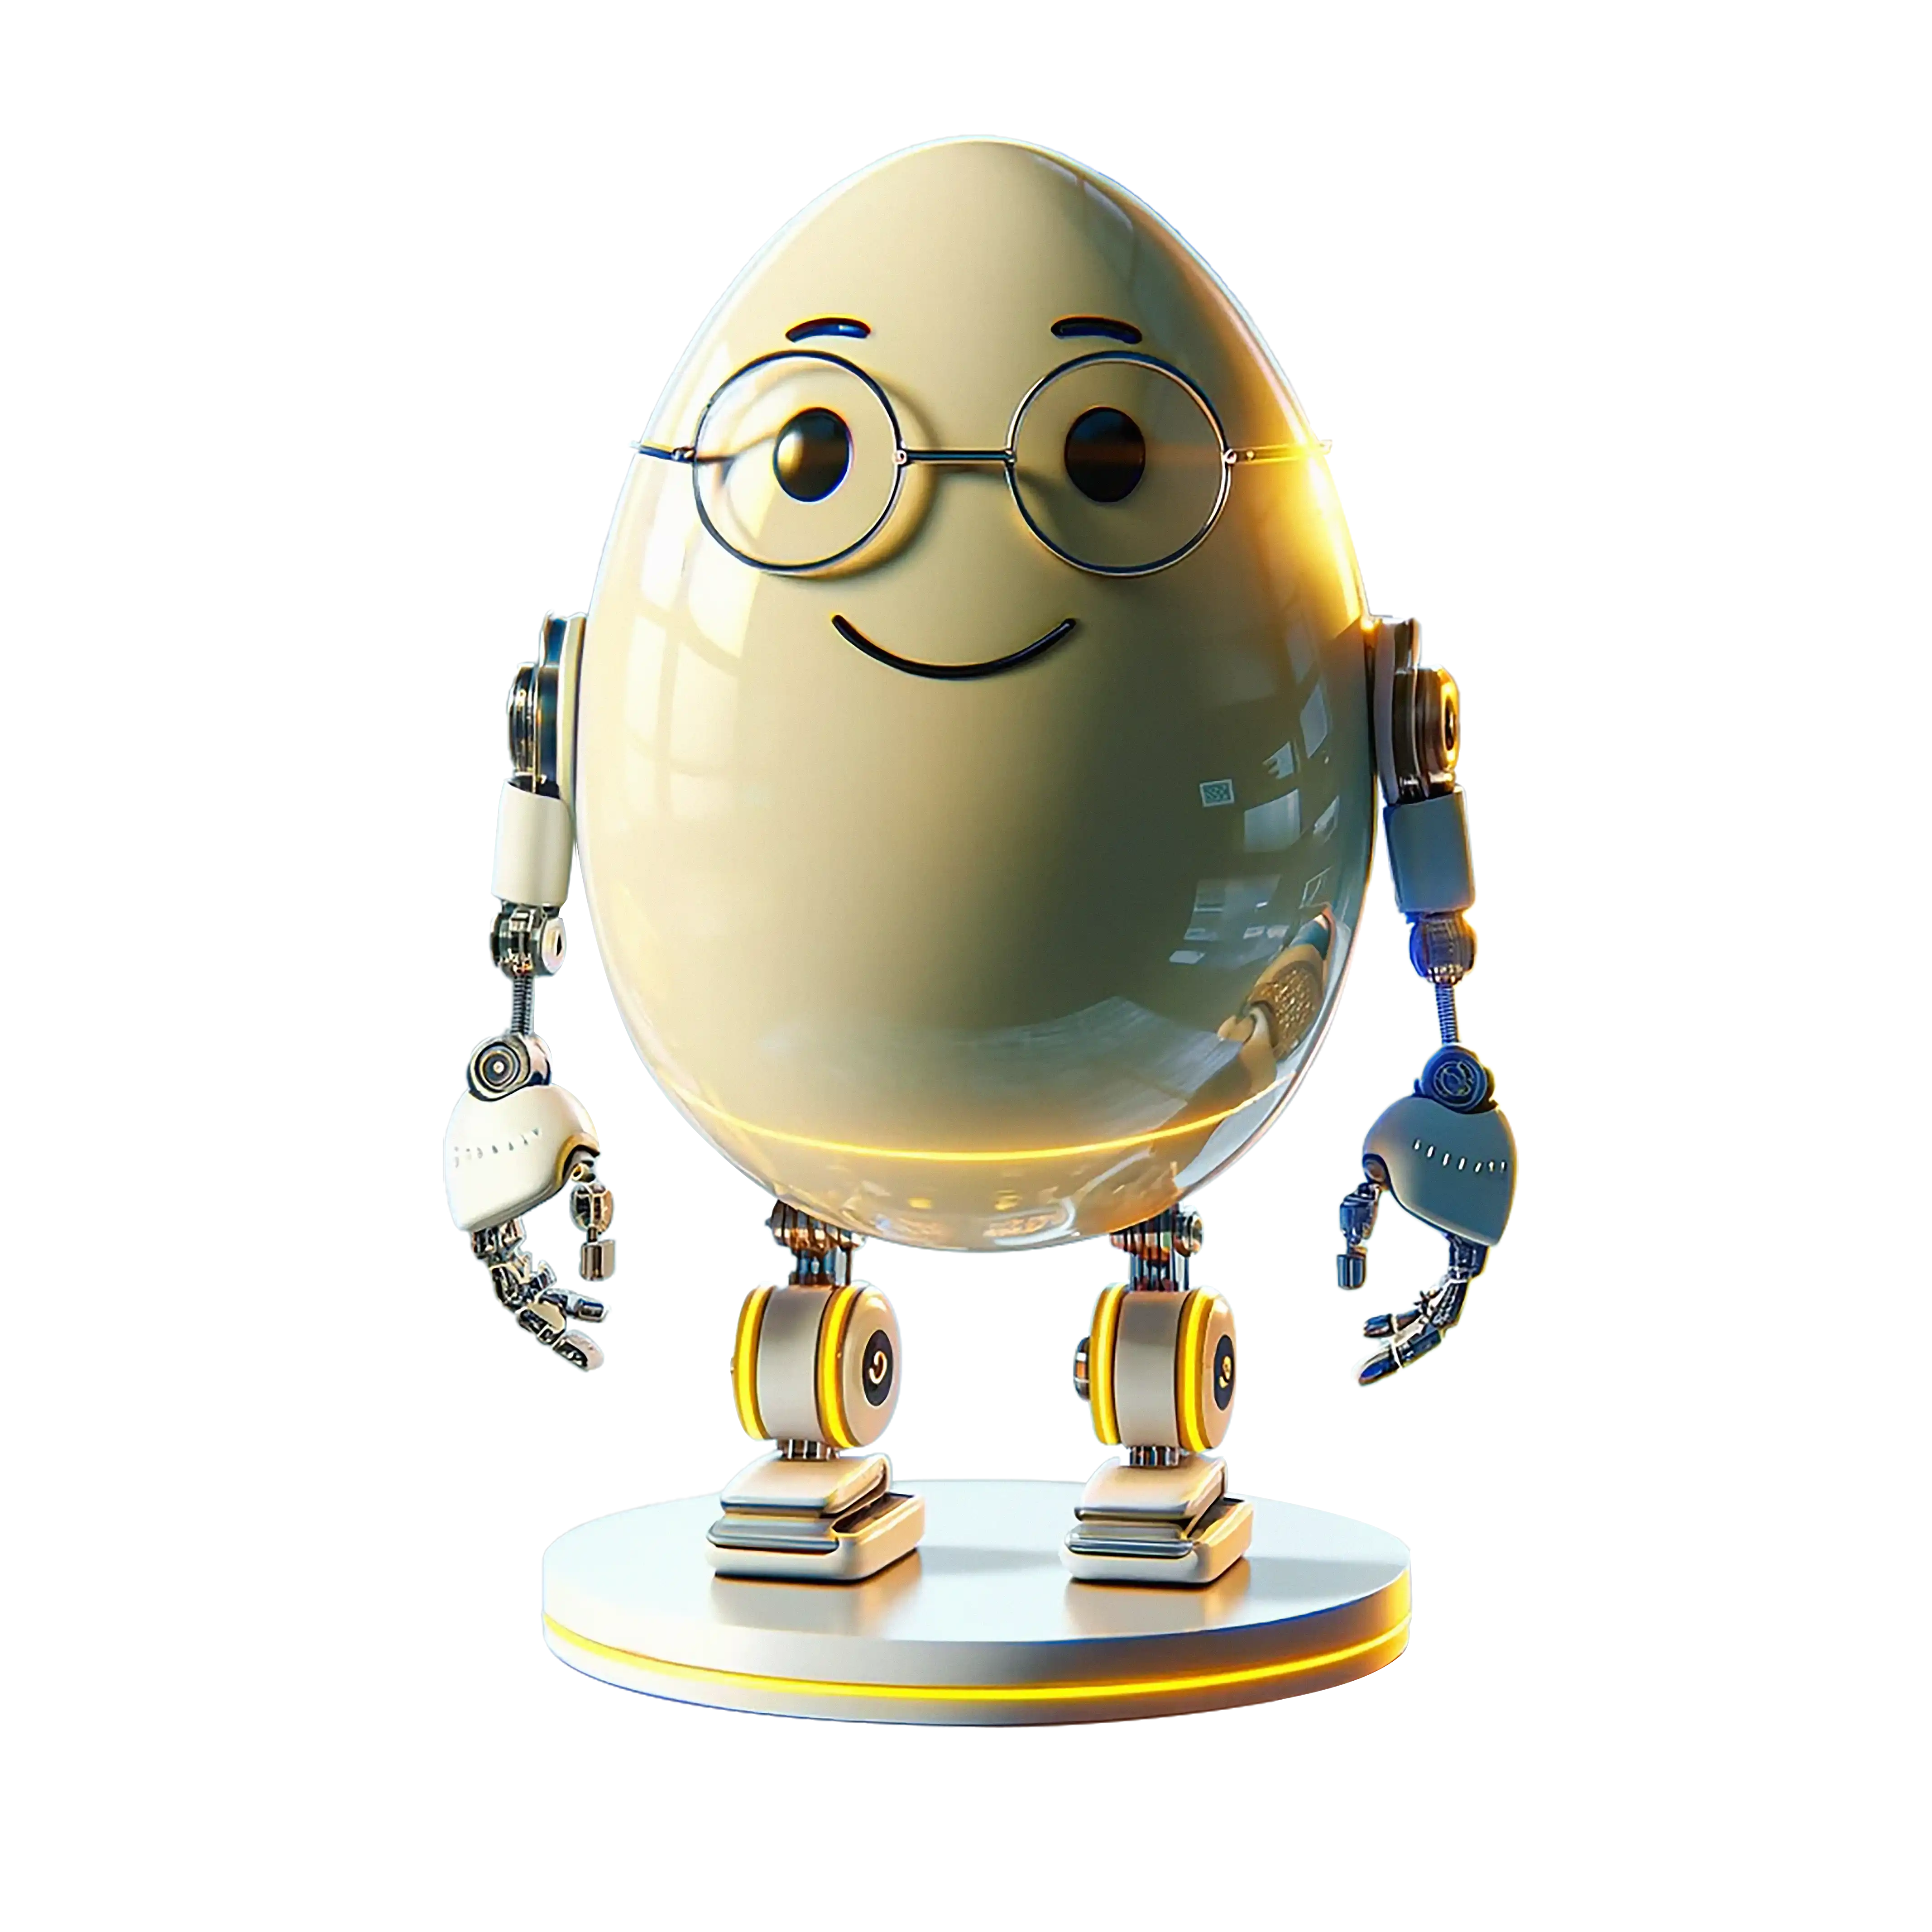 Eggmund the AI Assistant